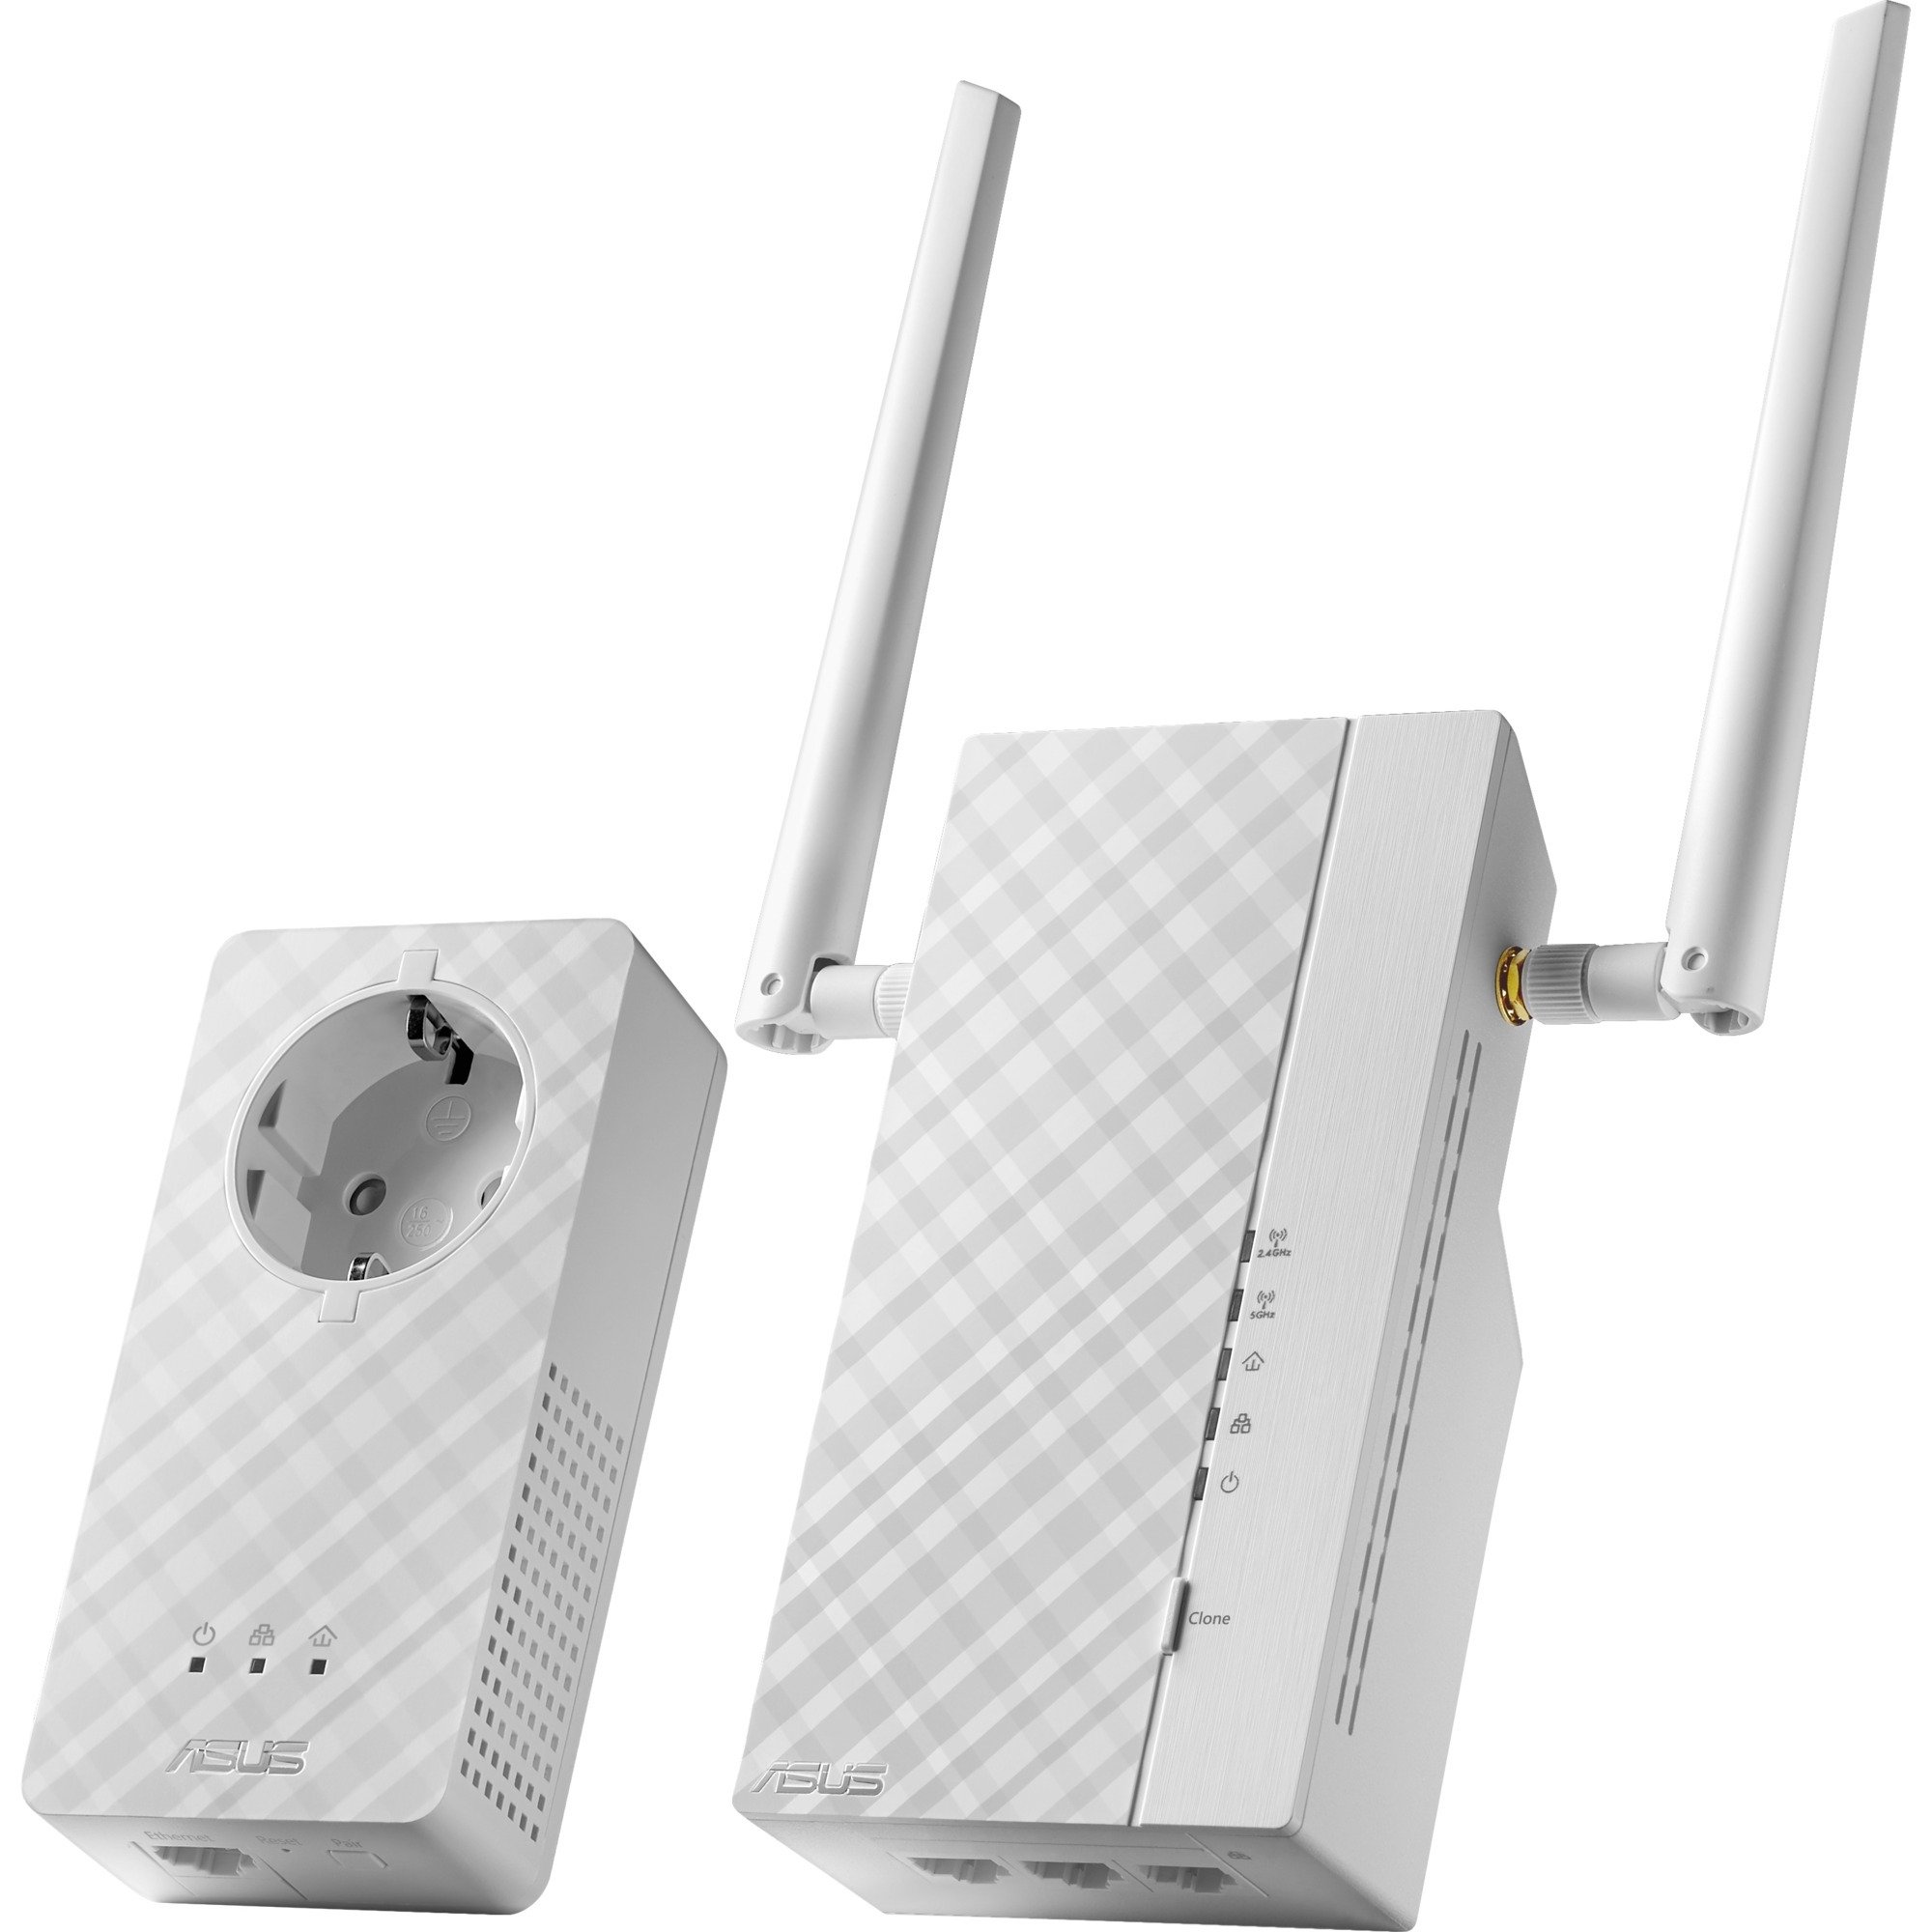 PL-AC56 Kit 1200 Mbit/s Przewodowa sie? lan Wi-Fi Bia?y 2 szt., PowerLAN